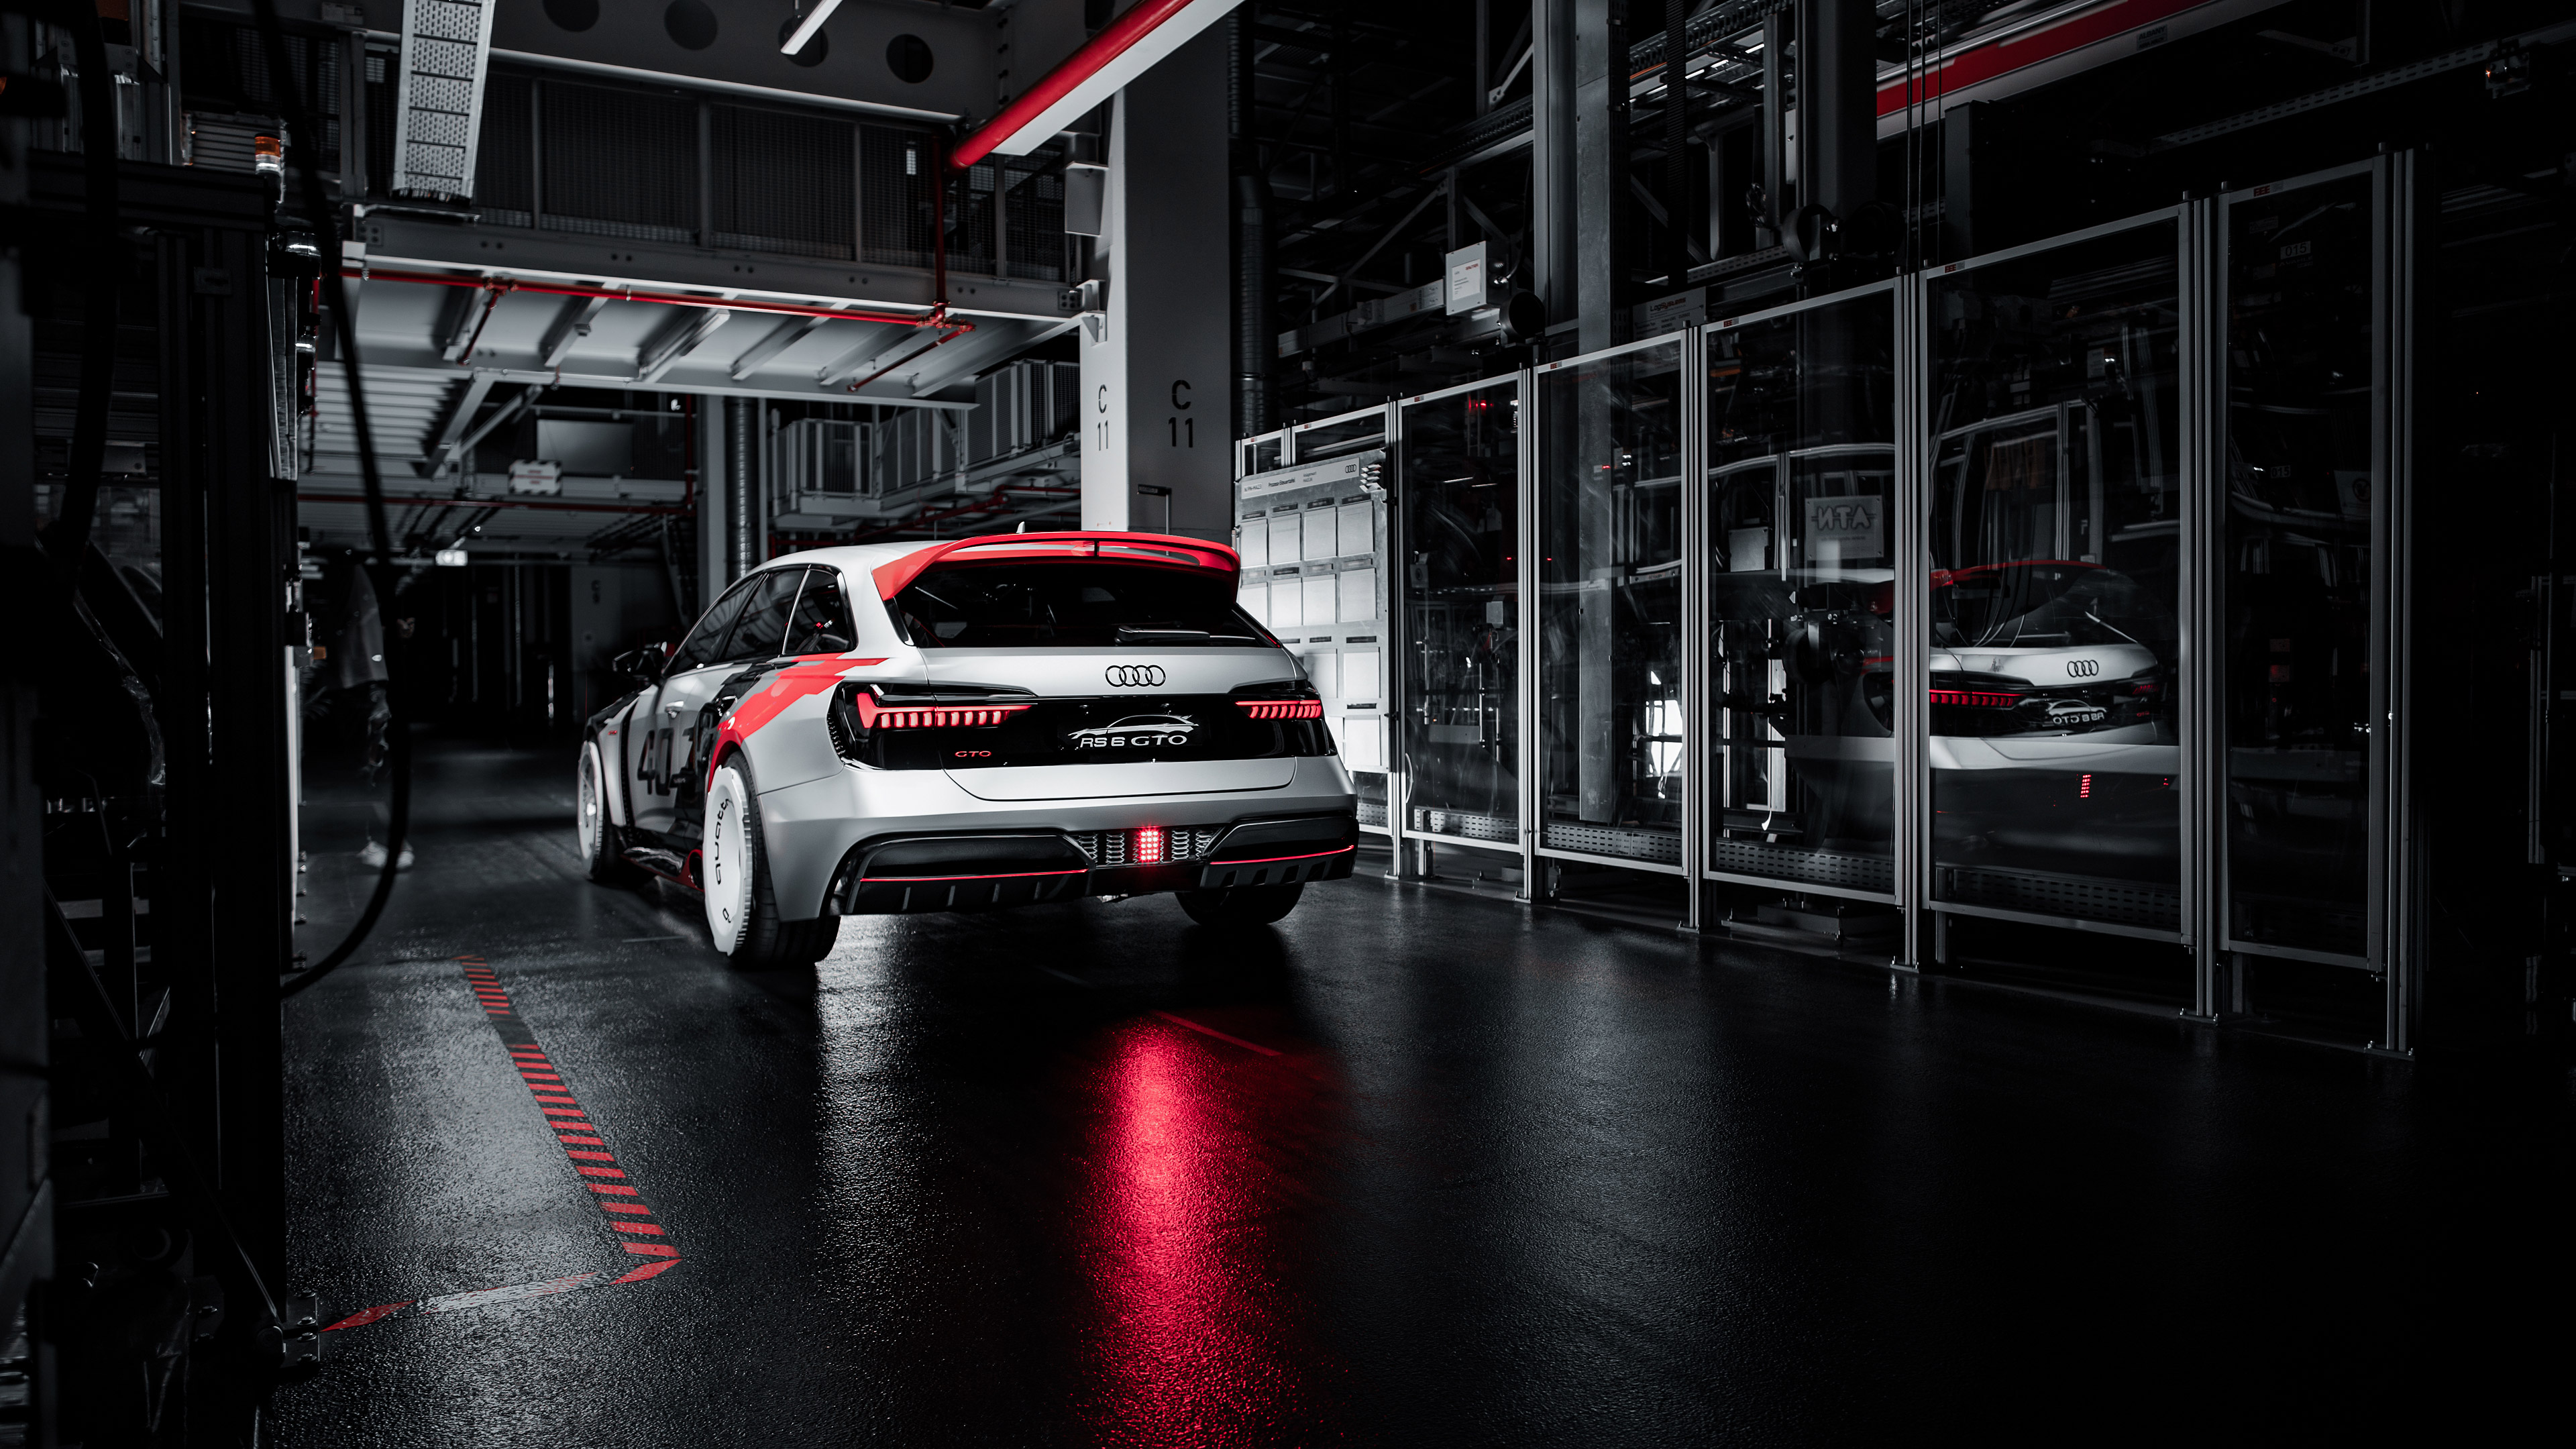 Descargar fondos de escritorio de Concepto Audi Rs6 Gto HD